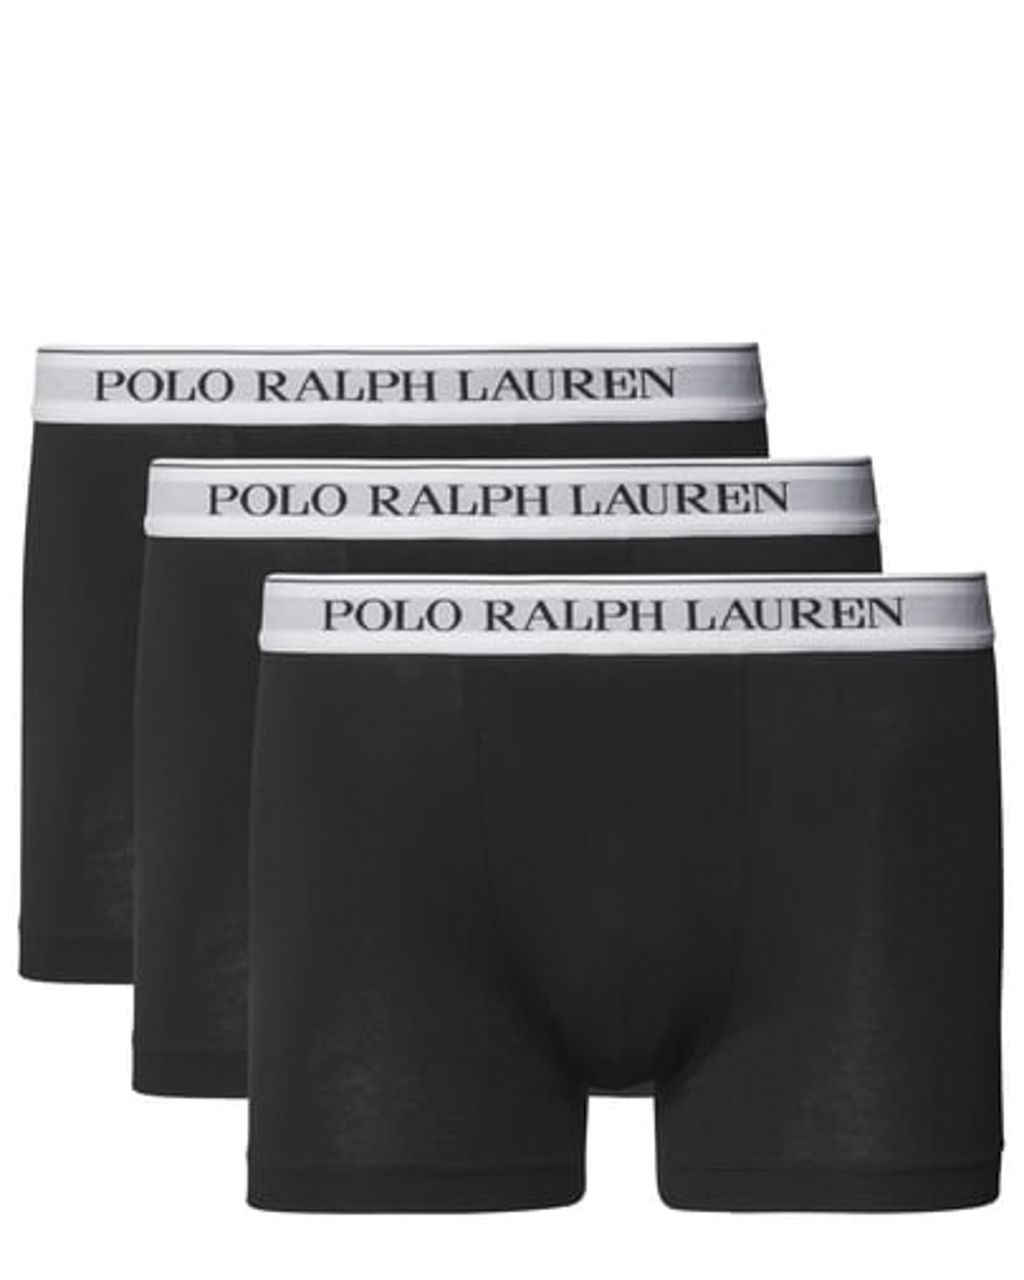 Polo Ralph Lauren - Boxershort Zwart 078598-001-L